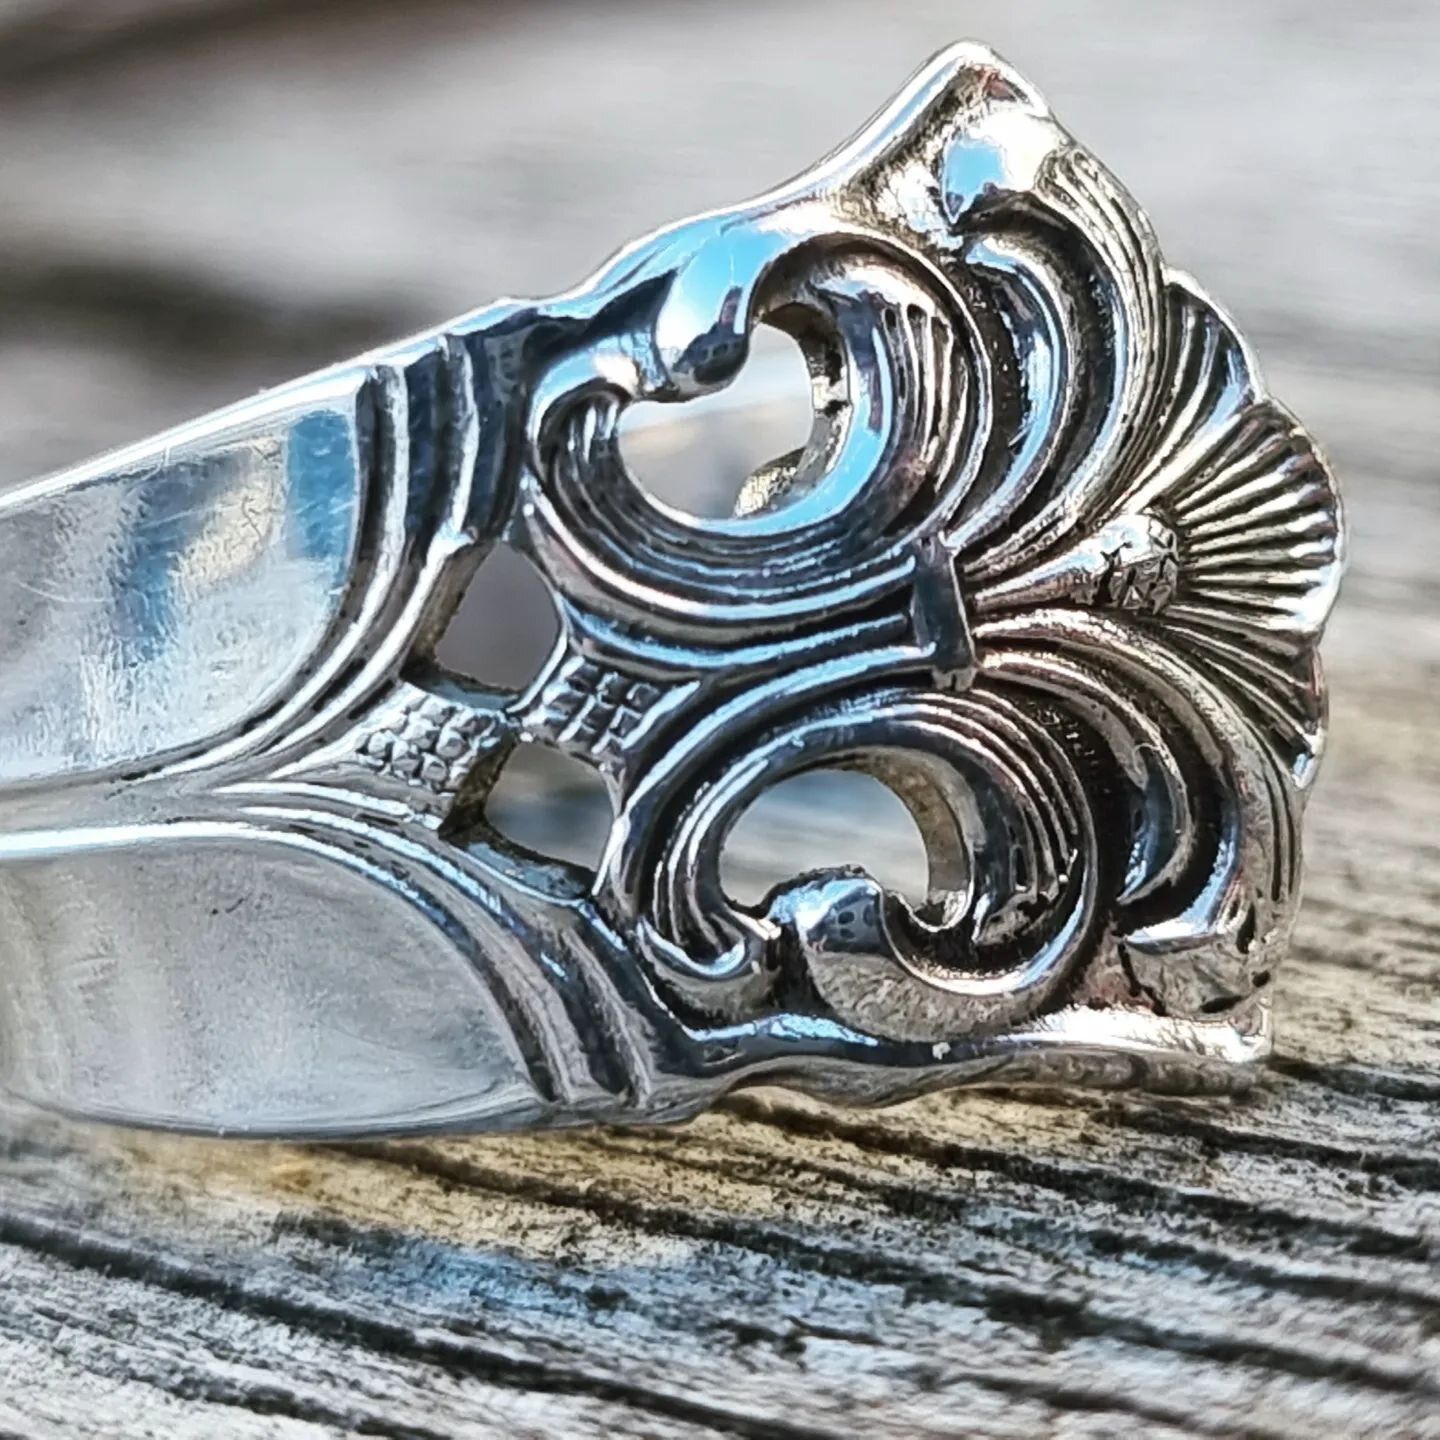 Dagens ring laget, stilig design som &aring;asser for alle! 
#spoonring #dalk #ring #jewelry #custom #reuse #remake